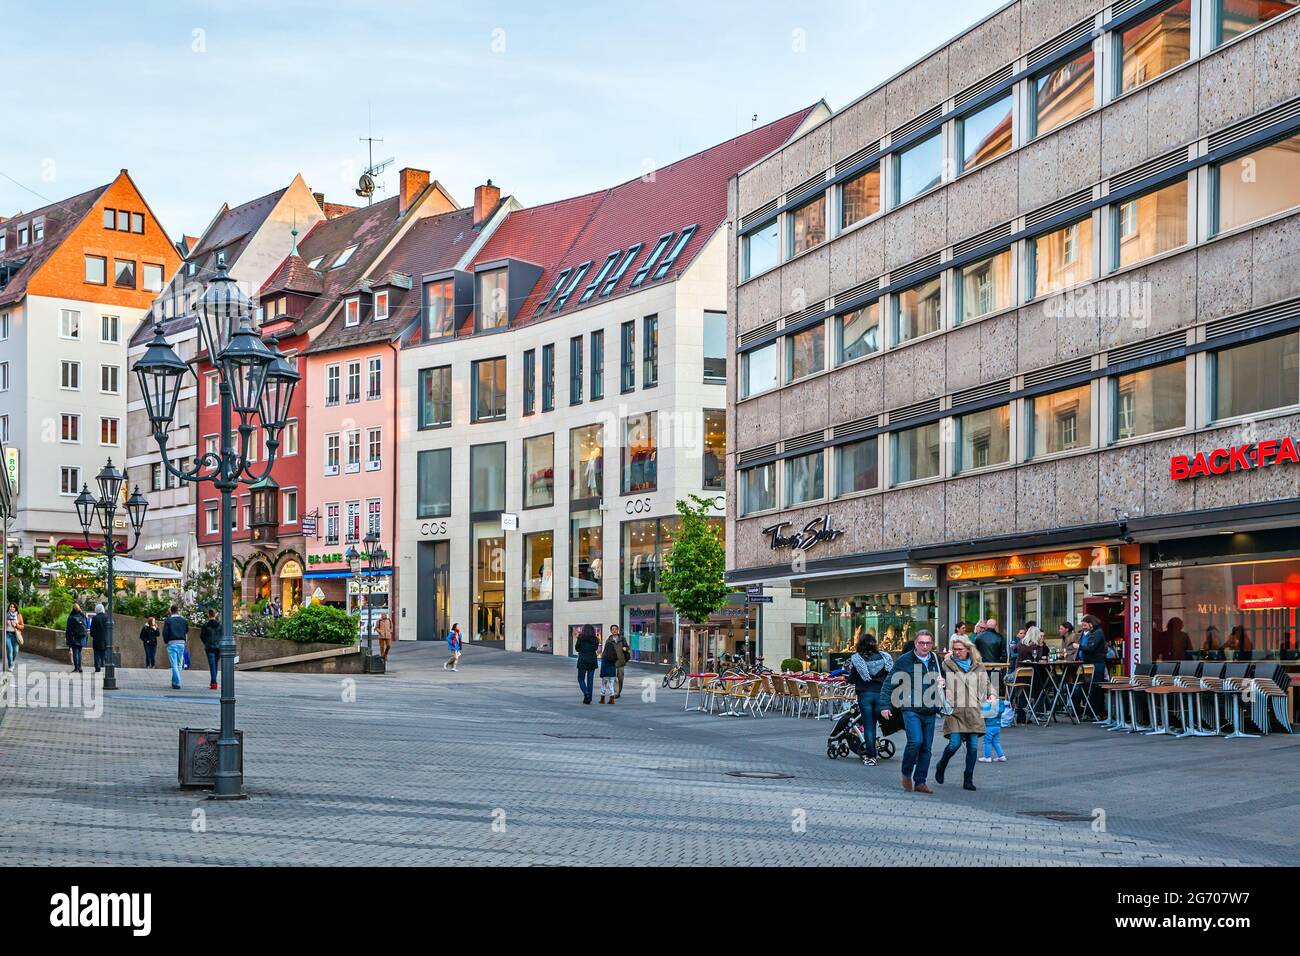 Nuremberg, Allemagne - 17 mai 2016 : rue dans la vieille ville de Nuremberg avec des gens à pied le soir Banque D'Images